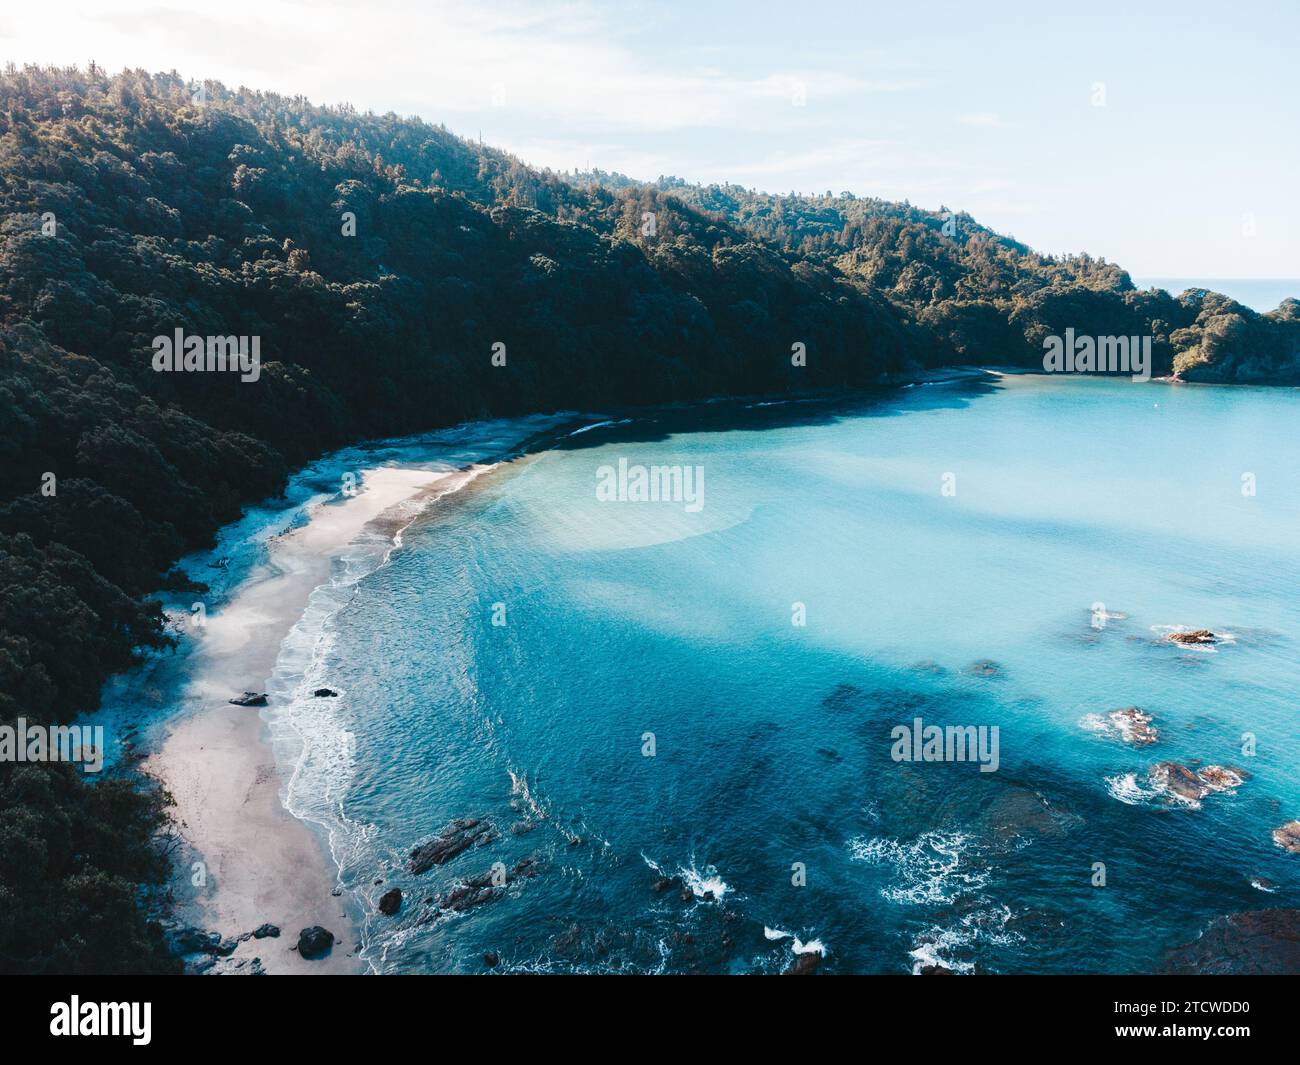 Foto di droni sopra la spiaggia di Ohope in nuova Zelanda che mostra spiagge, diverse formazioni rocciose, flora e fauna. Foto Stock